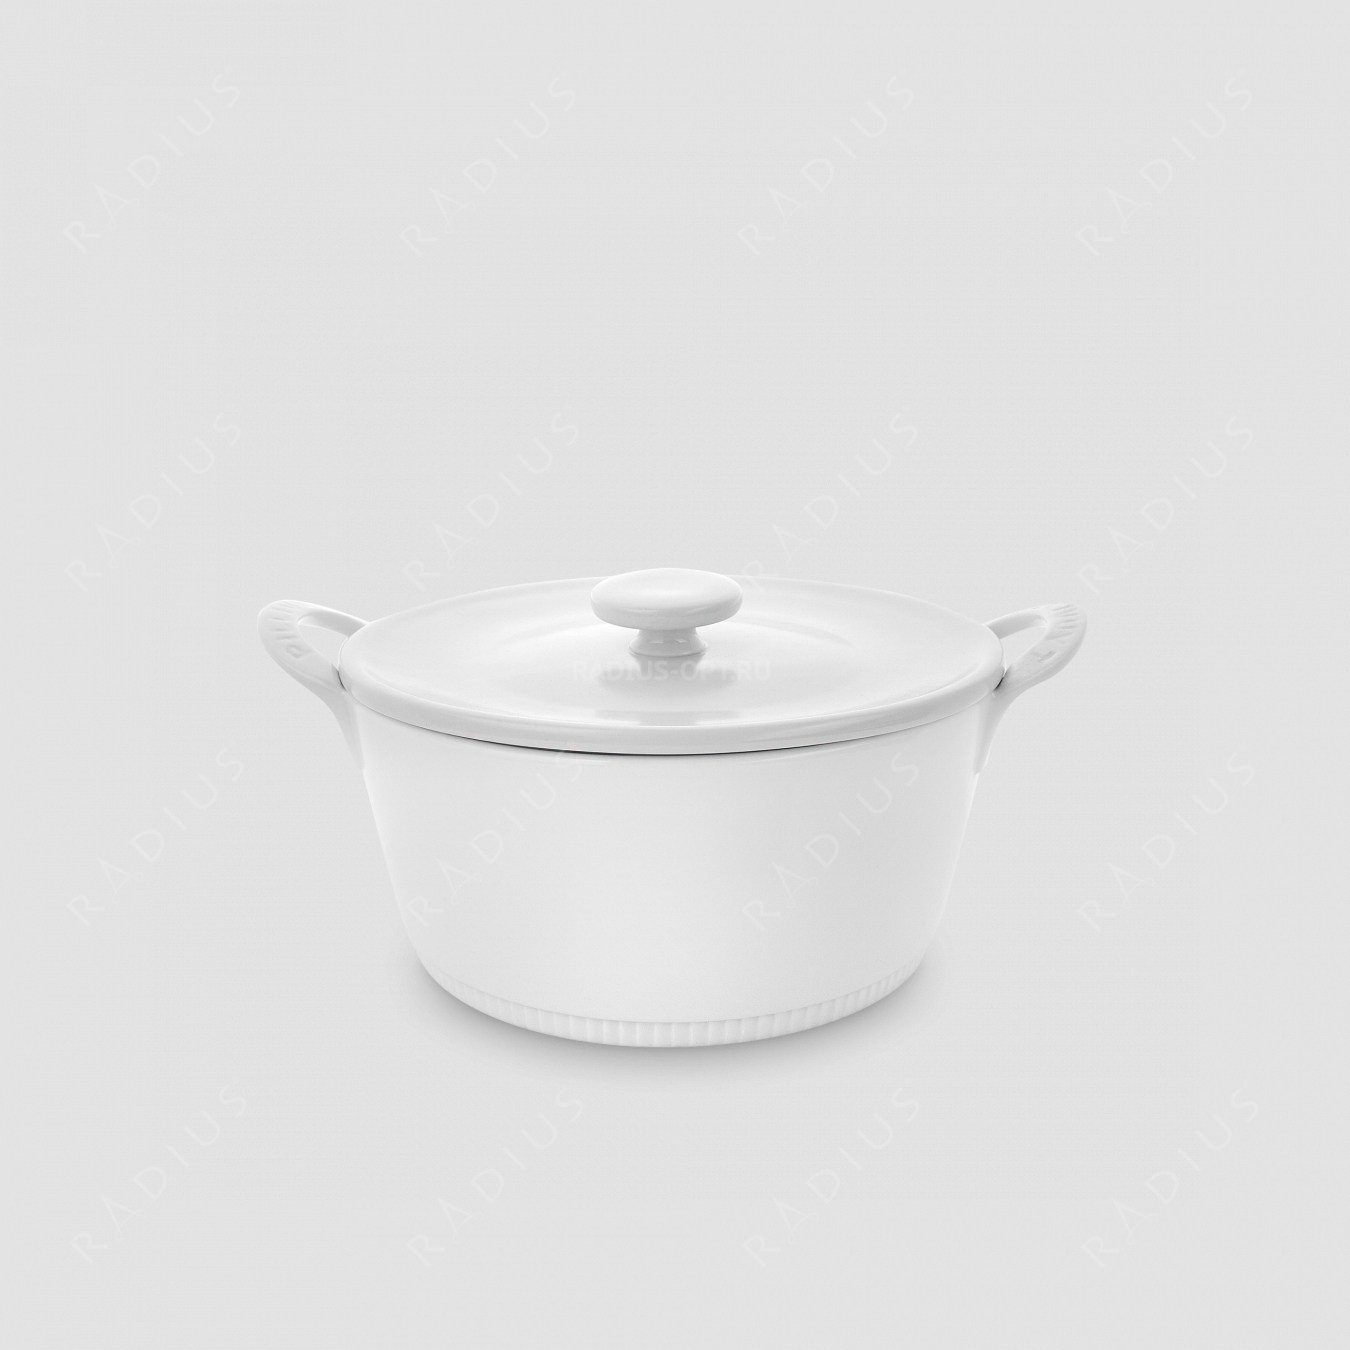 Кастрюля с крышкой для индукционной плиты, 2,25 л, жаропрочный фарфор, белый, серия Toulouse, PILLIVUYT, Франция